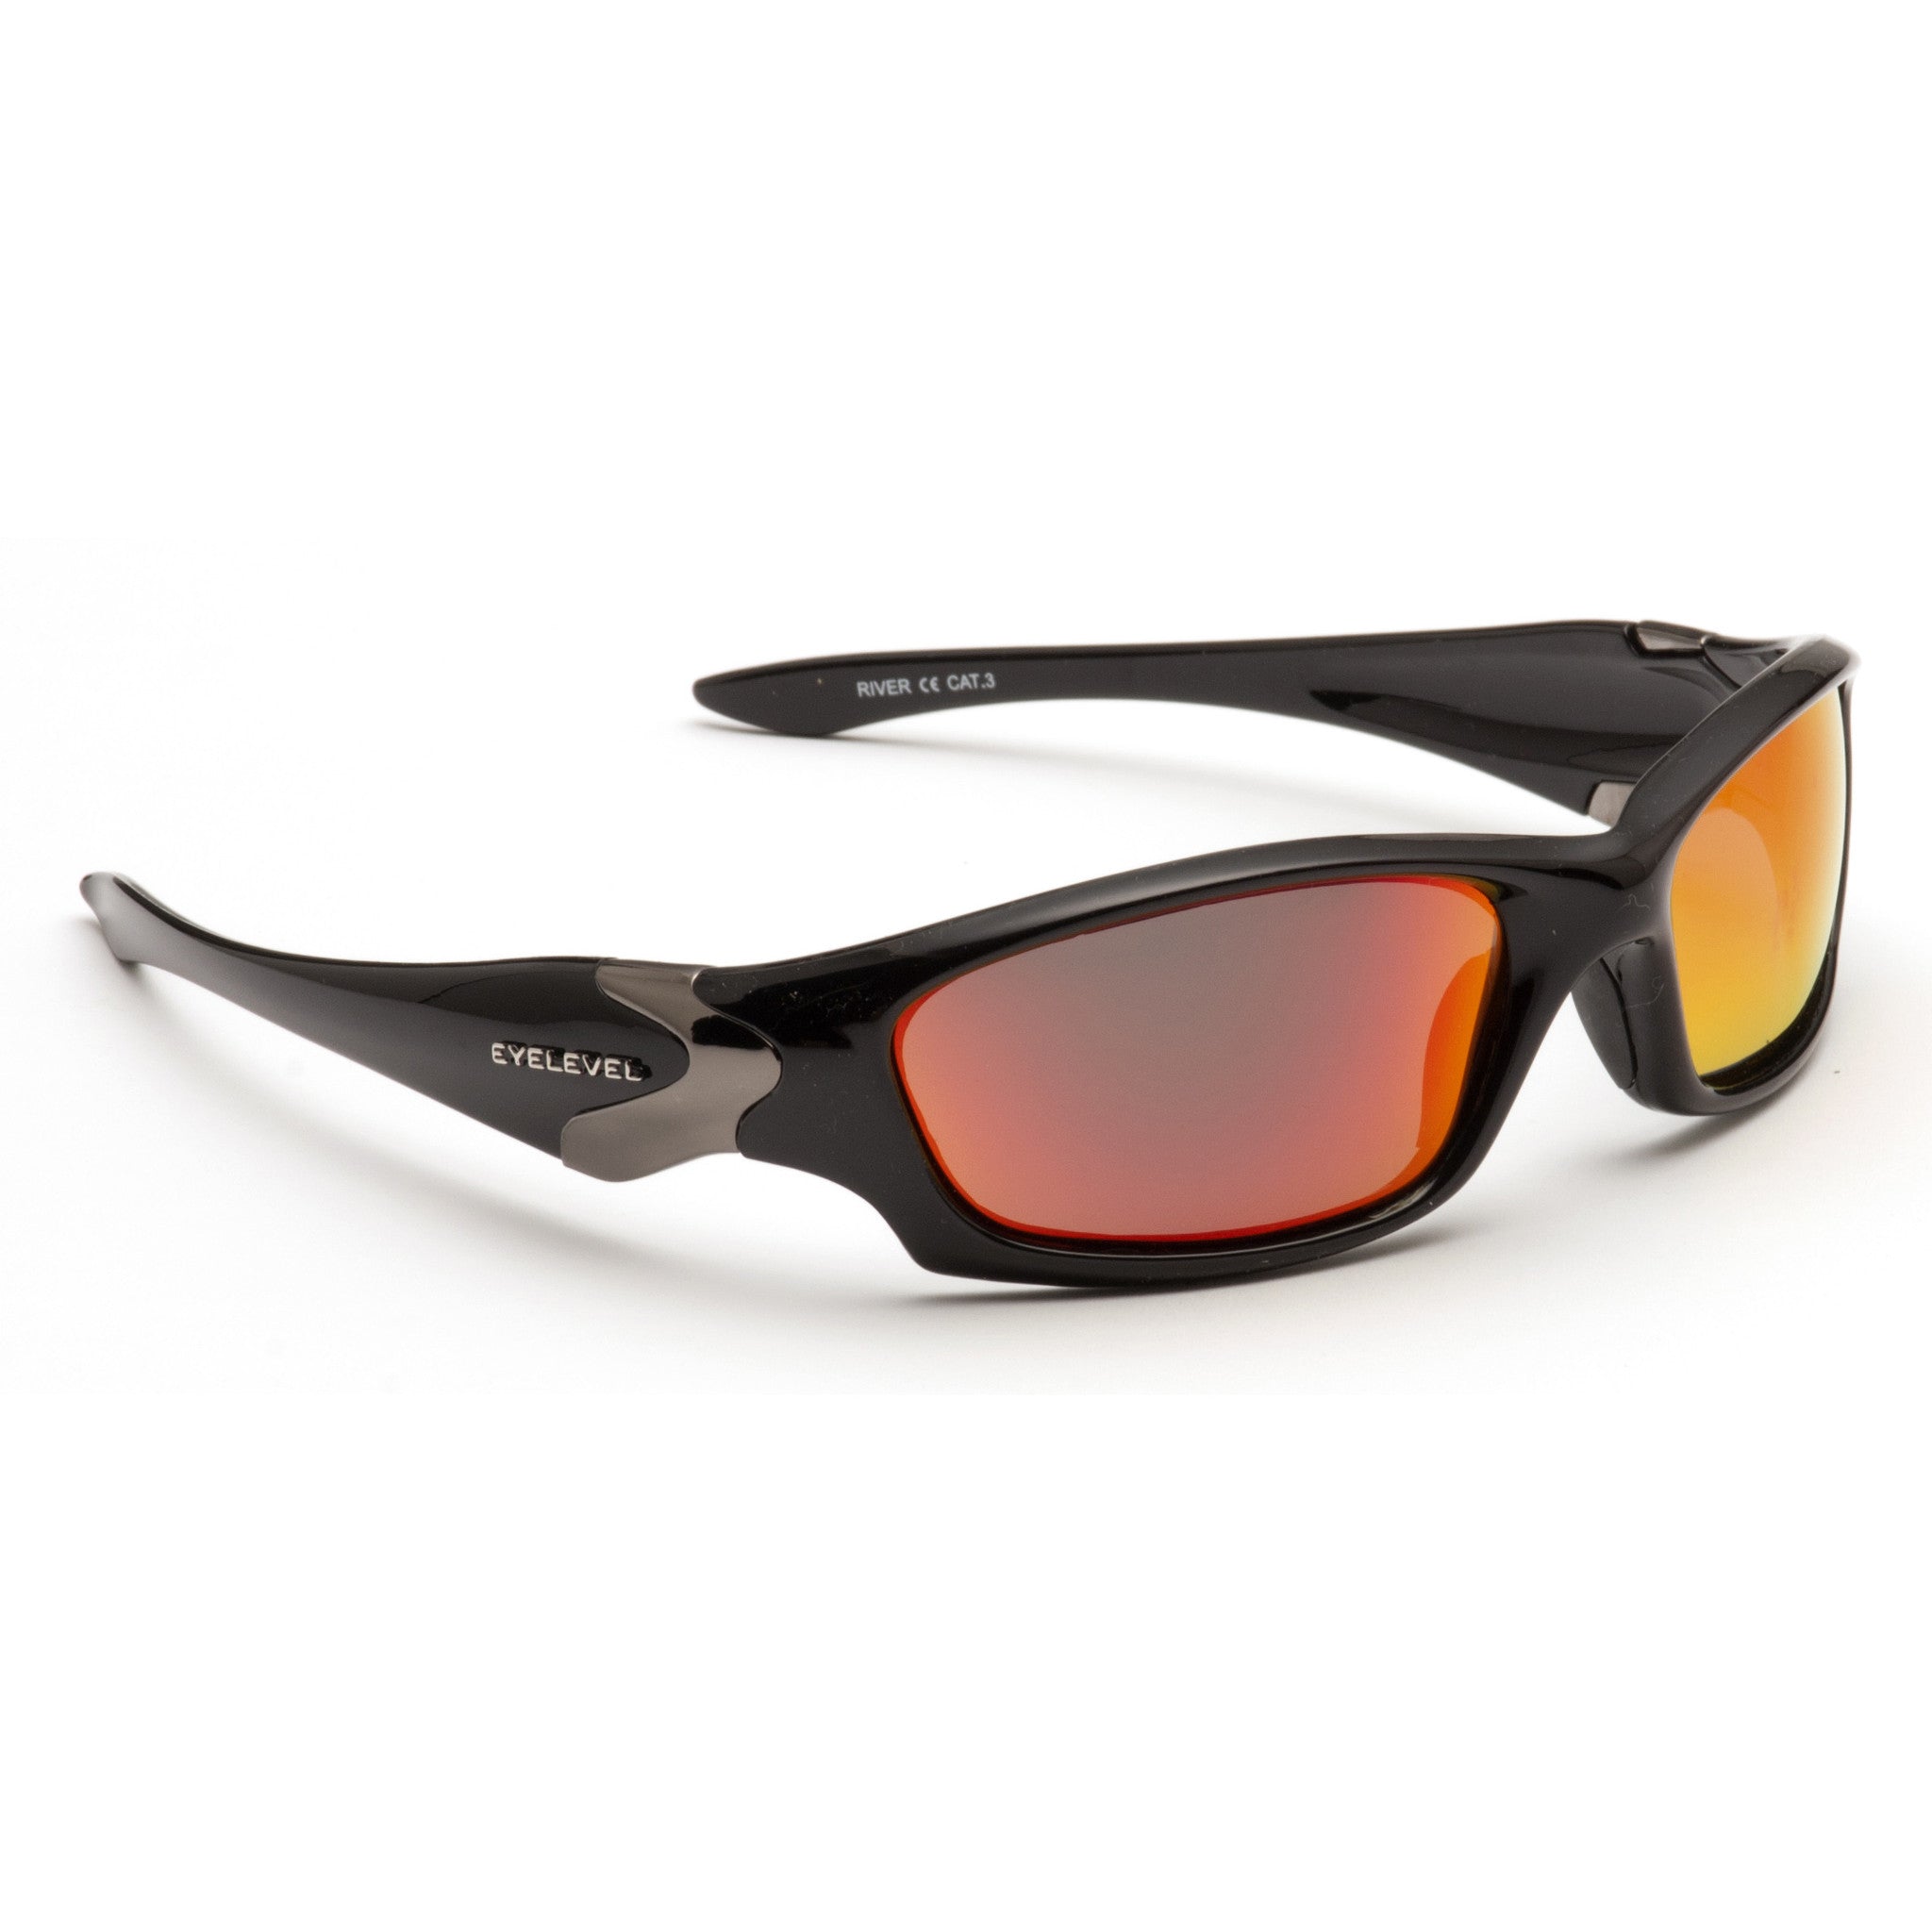 Eyelevel River Polarized Sunglasses